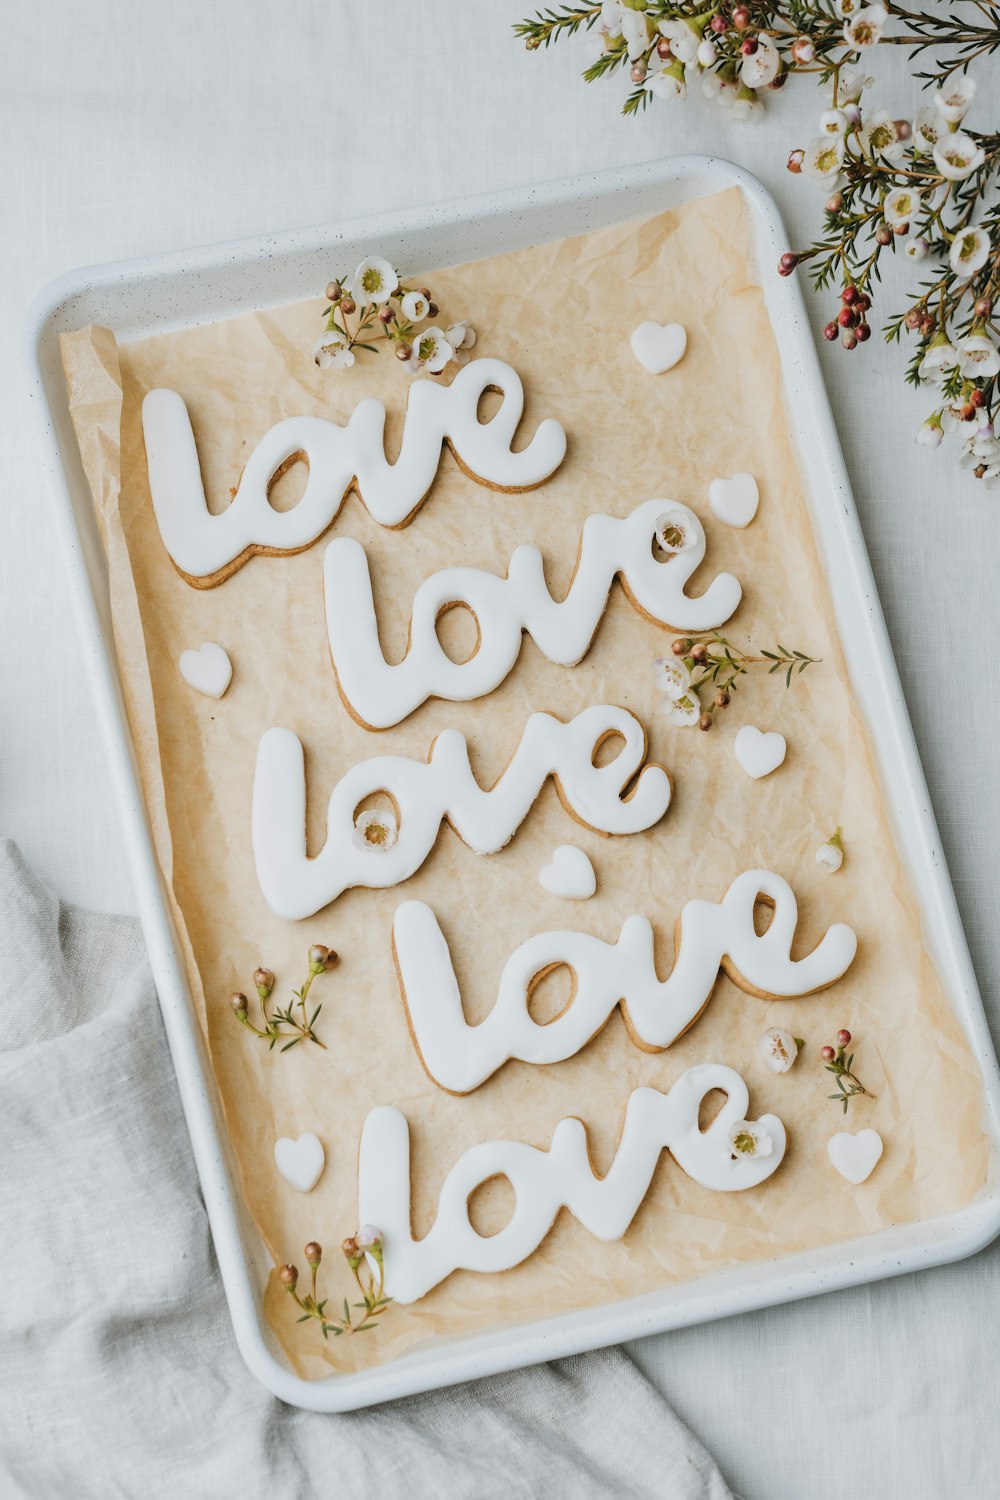 사랑이라는 단어가 적힌 쿠키